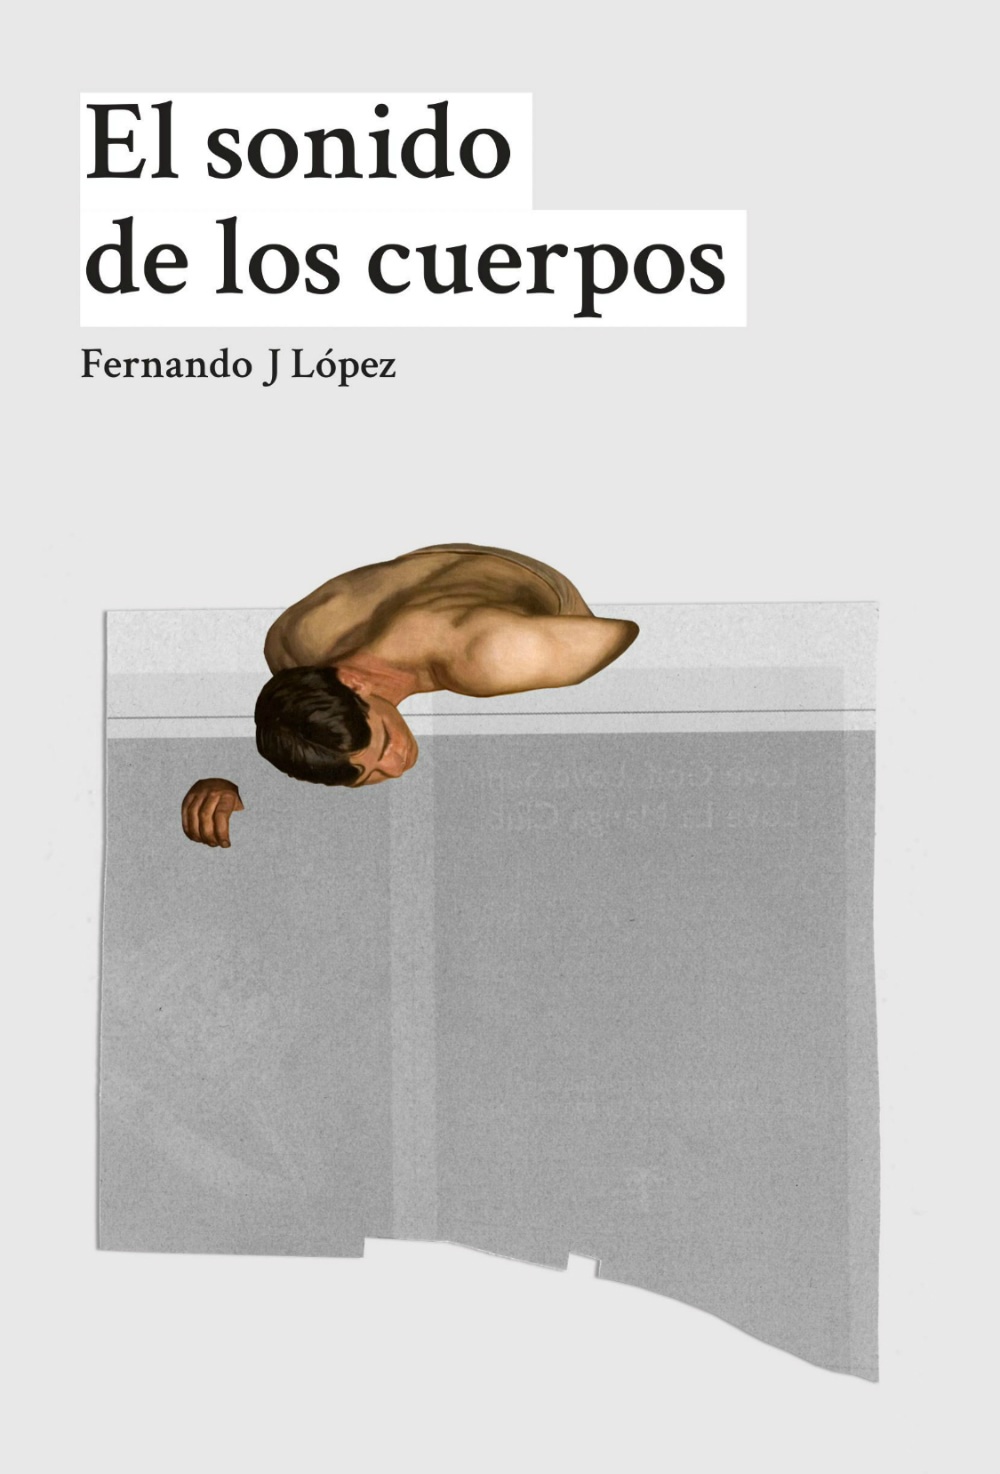 Fernando J. López: El sonido de los cuerpos